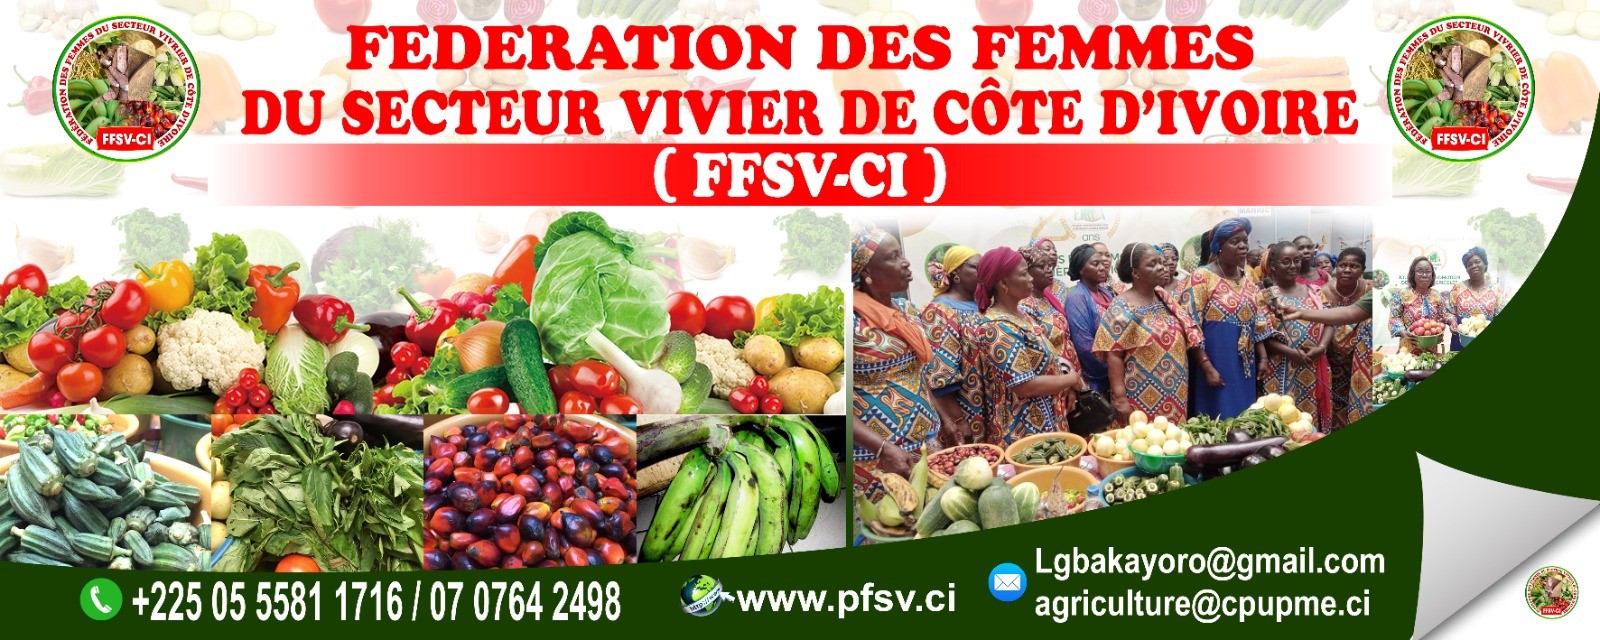 FédérationdesFemmesduSecteurVivrierdeCôted'Ivoire